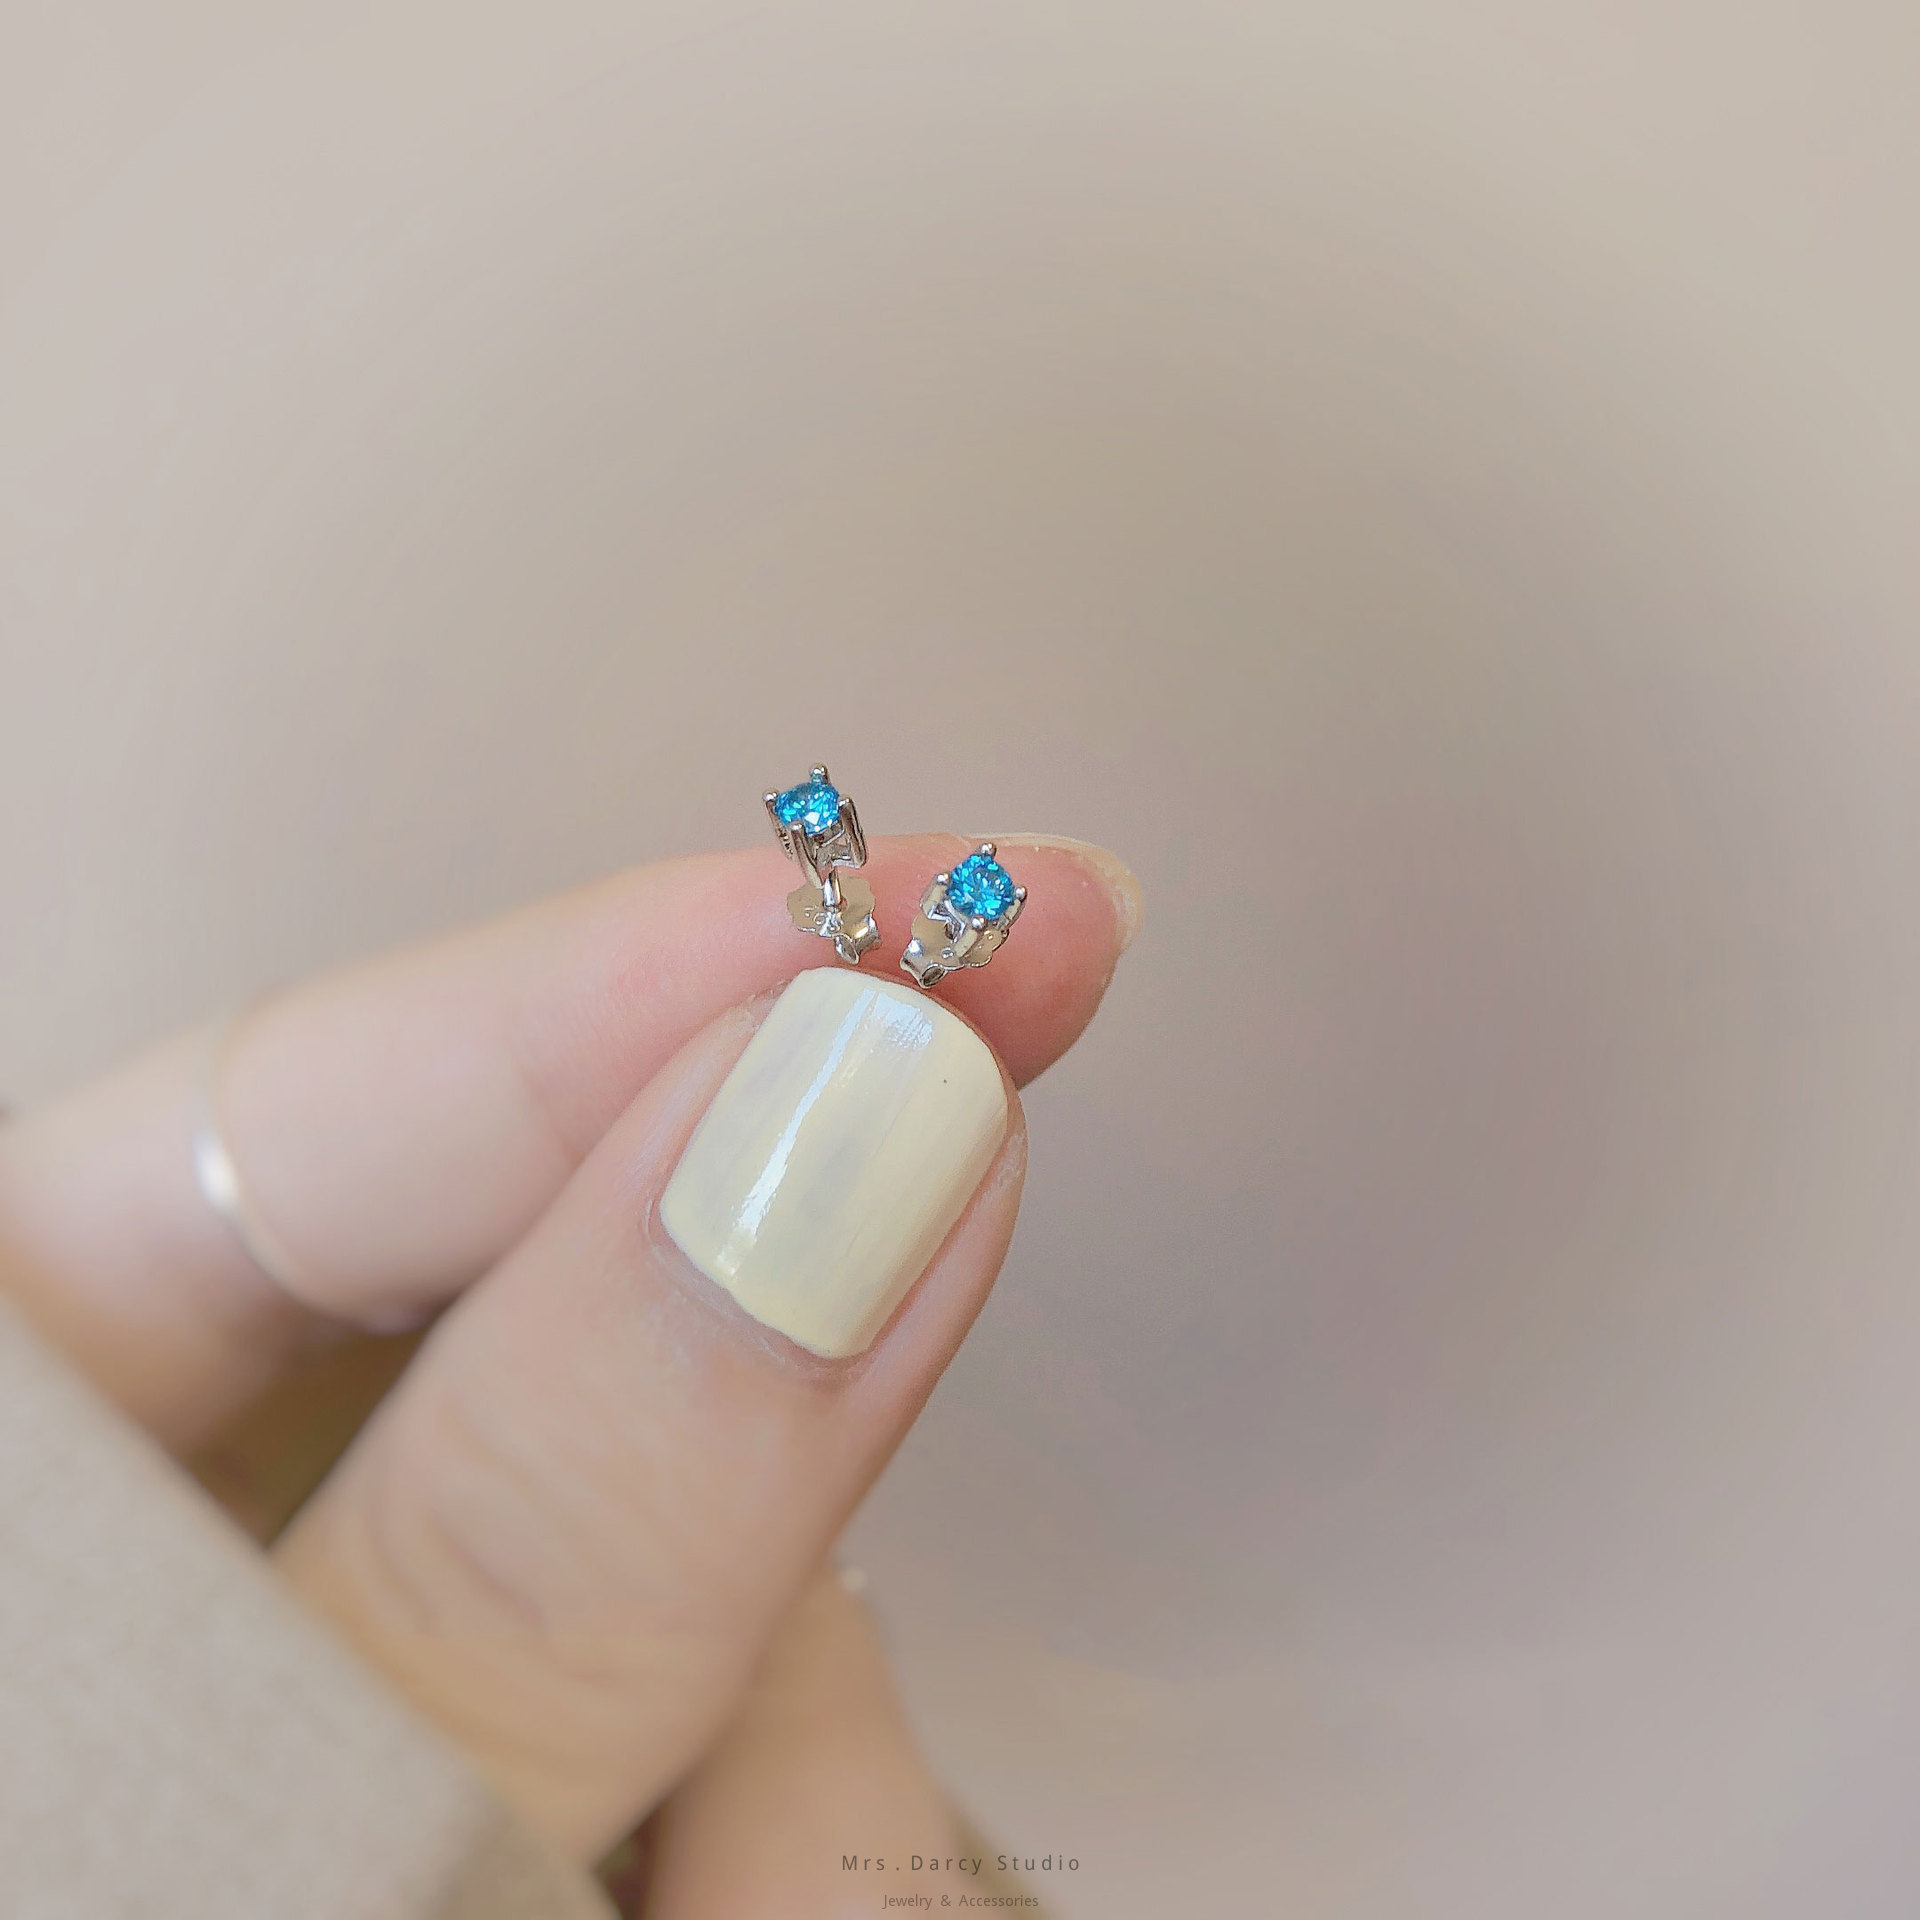 MRS.D【In Stock】100% Sterling Silver Topa Blue Mini S925 Earrings Stud Earrings Colors of Zircon Jewelry Gift Ear Clips Minimalist Earring Design Jewelry Girls Allergy Free